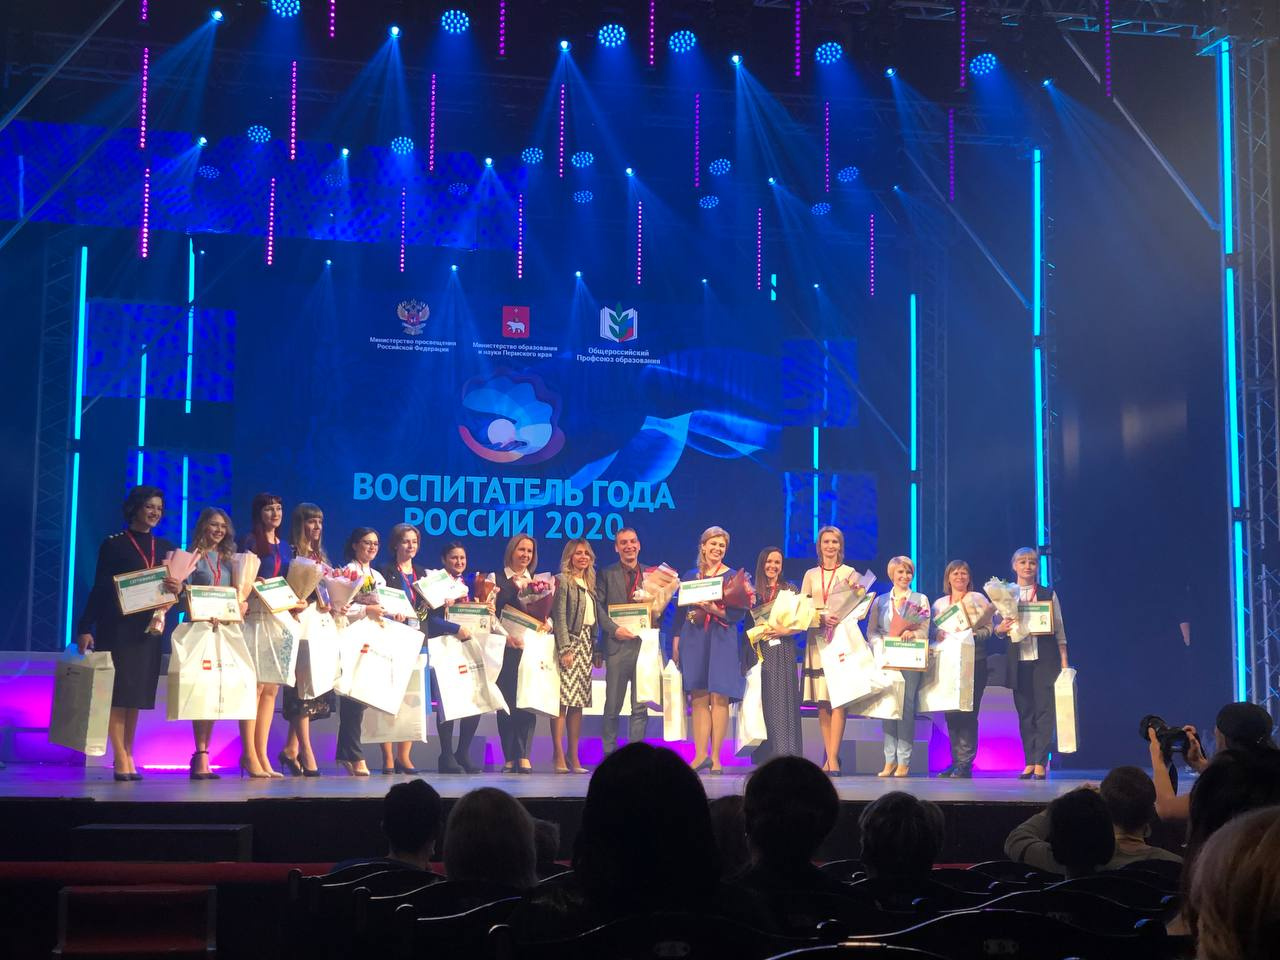 Педагог из Новокузнецка вошла в число 15 лауреатов конкурса «Воспитатель года России – 2020»